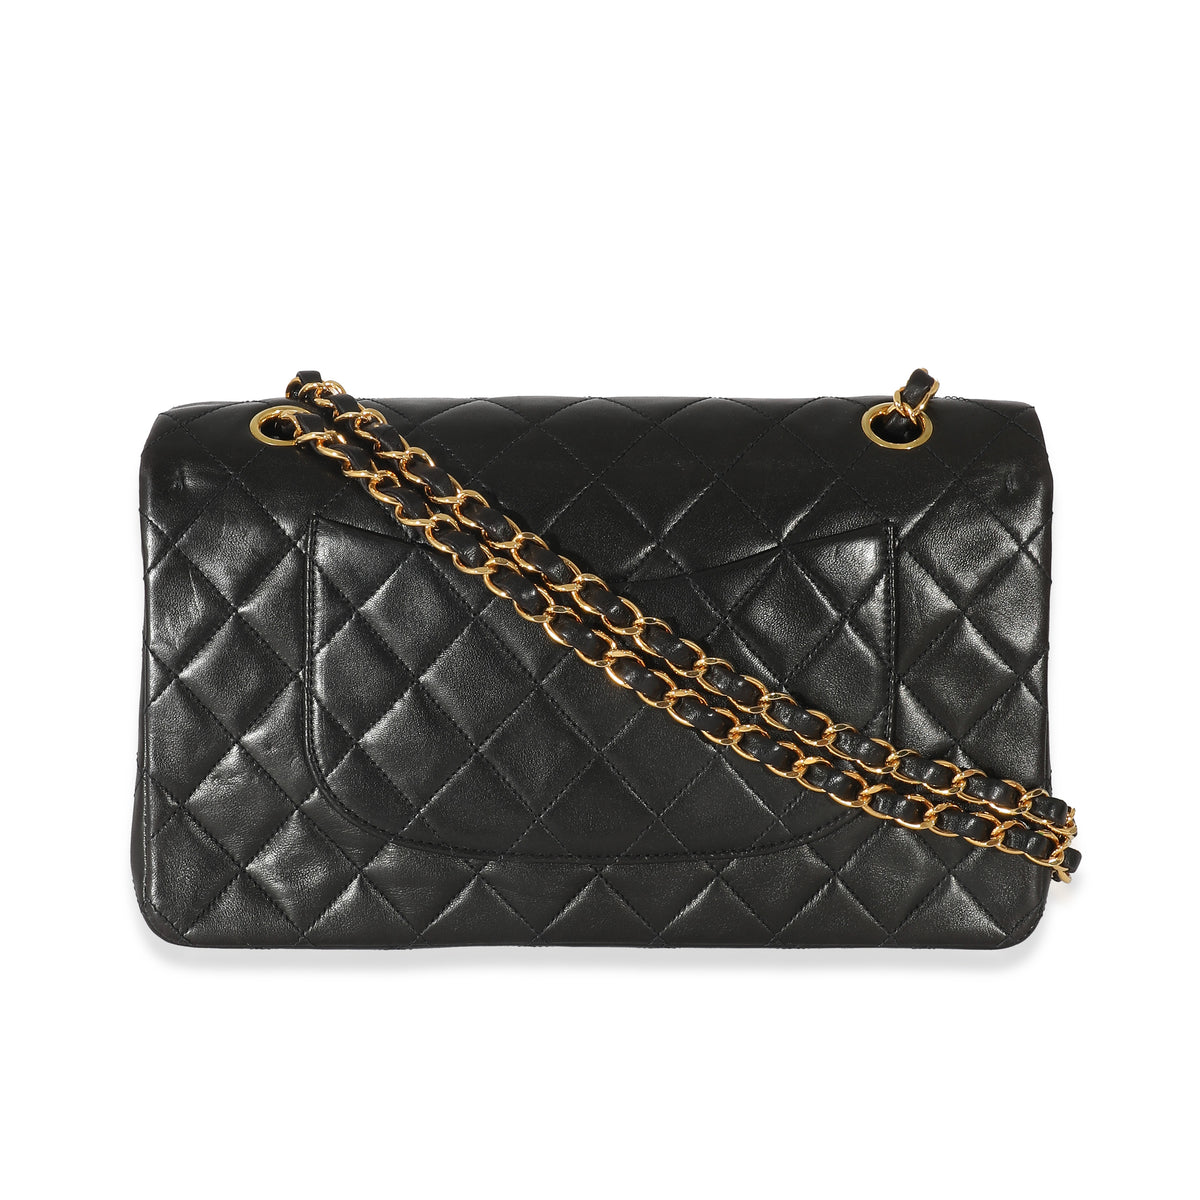 Chanel Black Caviar Small Classic Flap Wallet, myGemma, DE